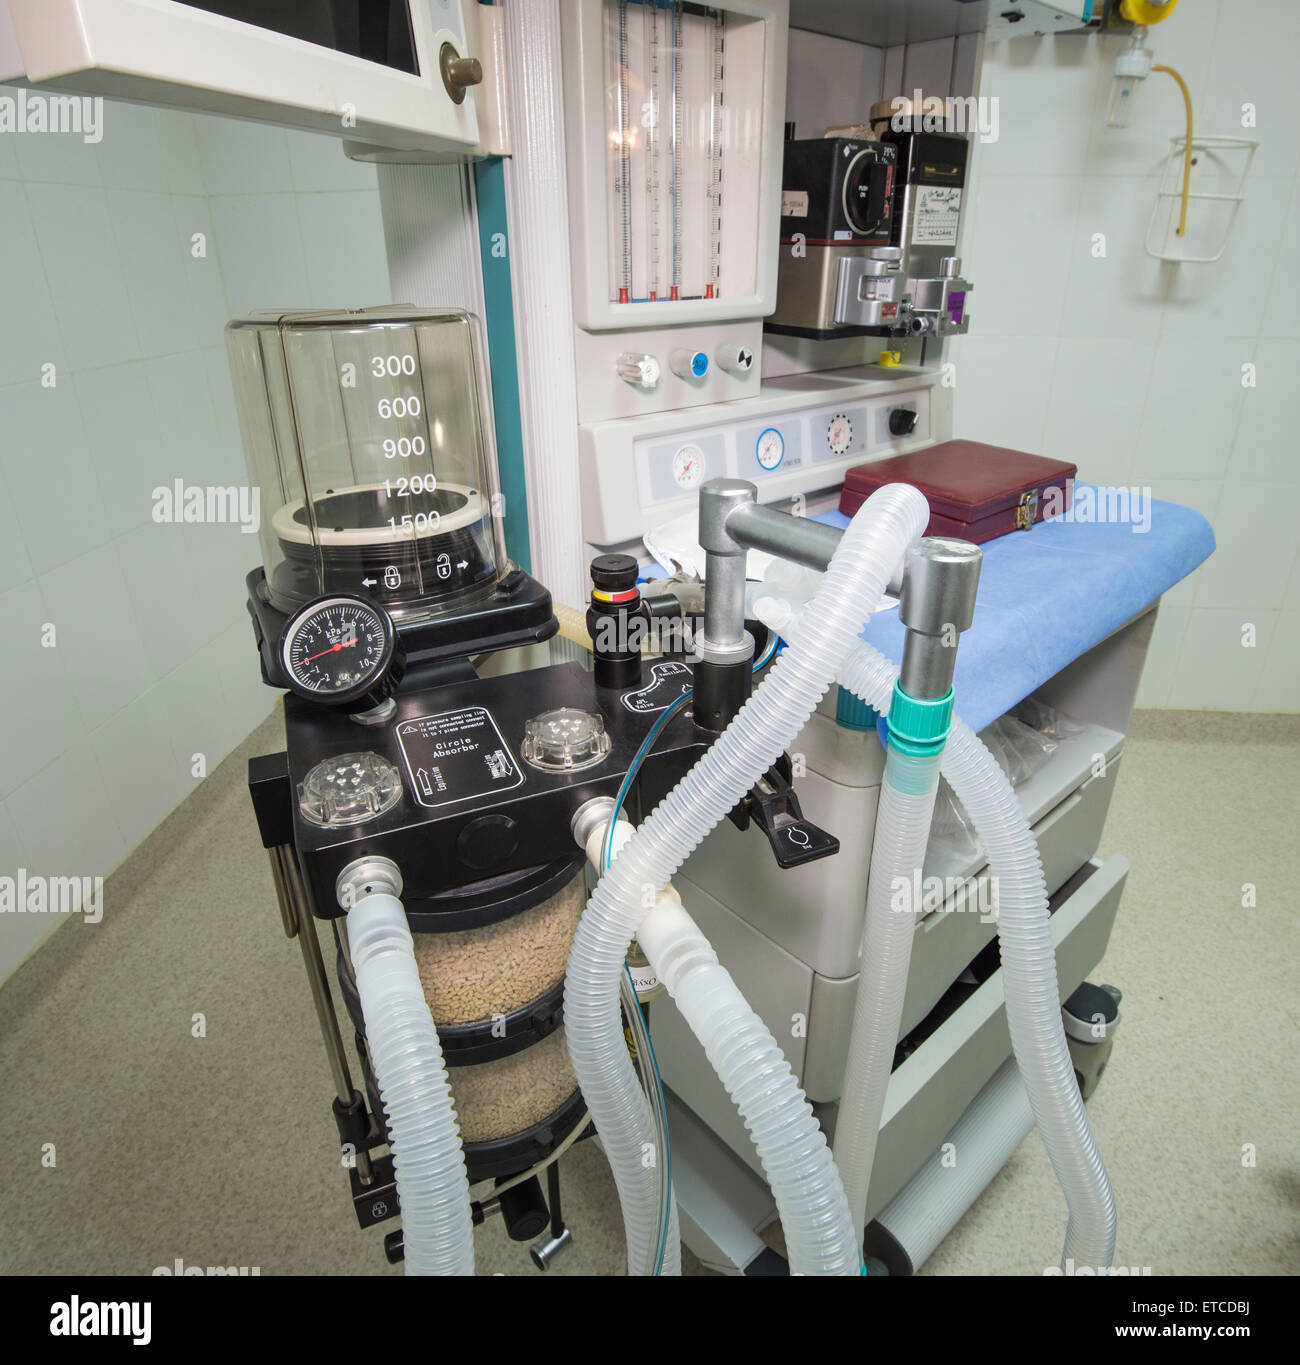 Closeup détail d'un ventilateur de la machine en salle d'opération d'un hôpital Banque D'Images